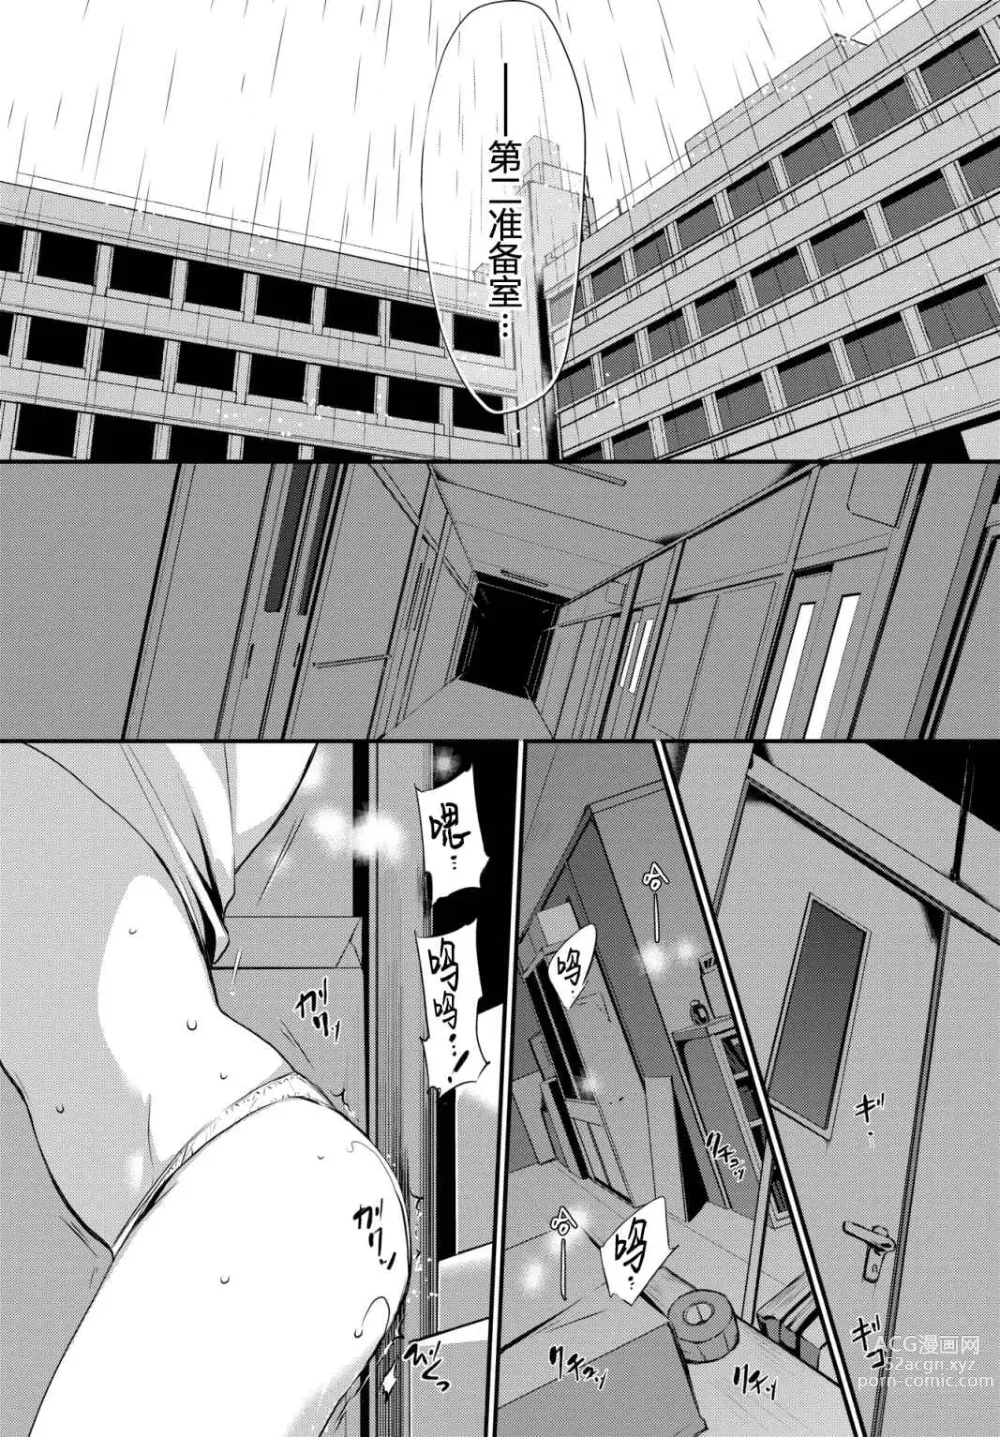 Page 10 of manga Suki No Uragawa (uncensored)